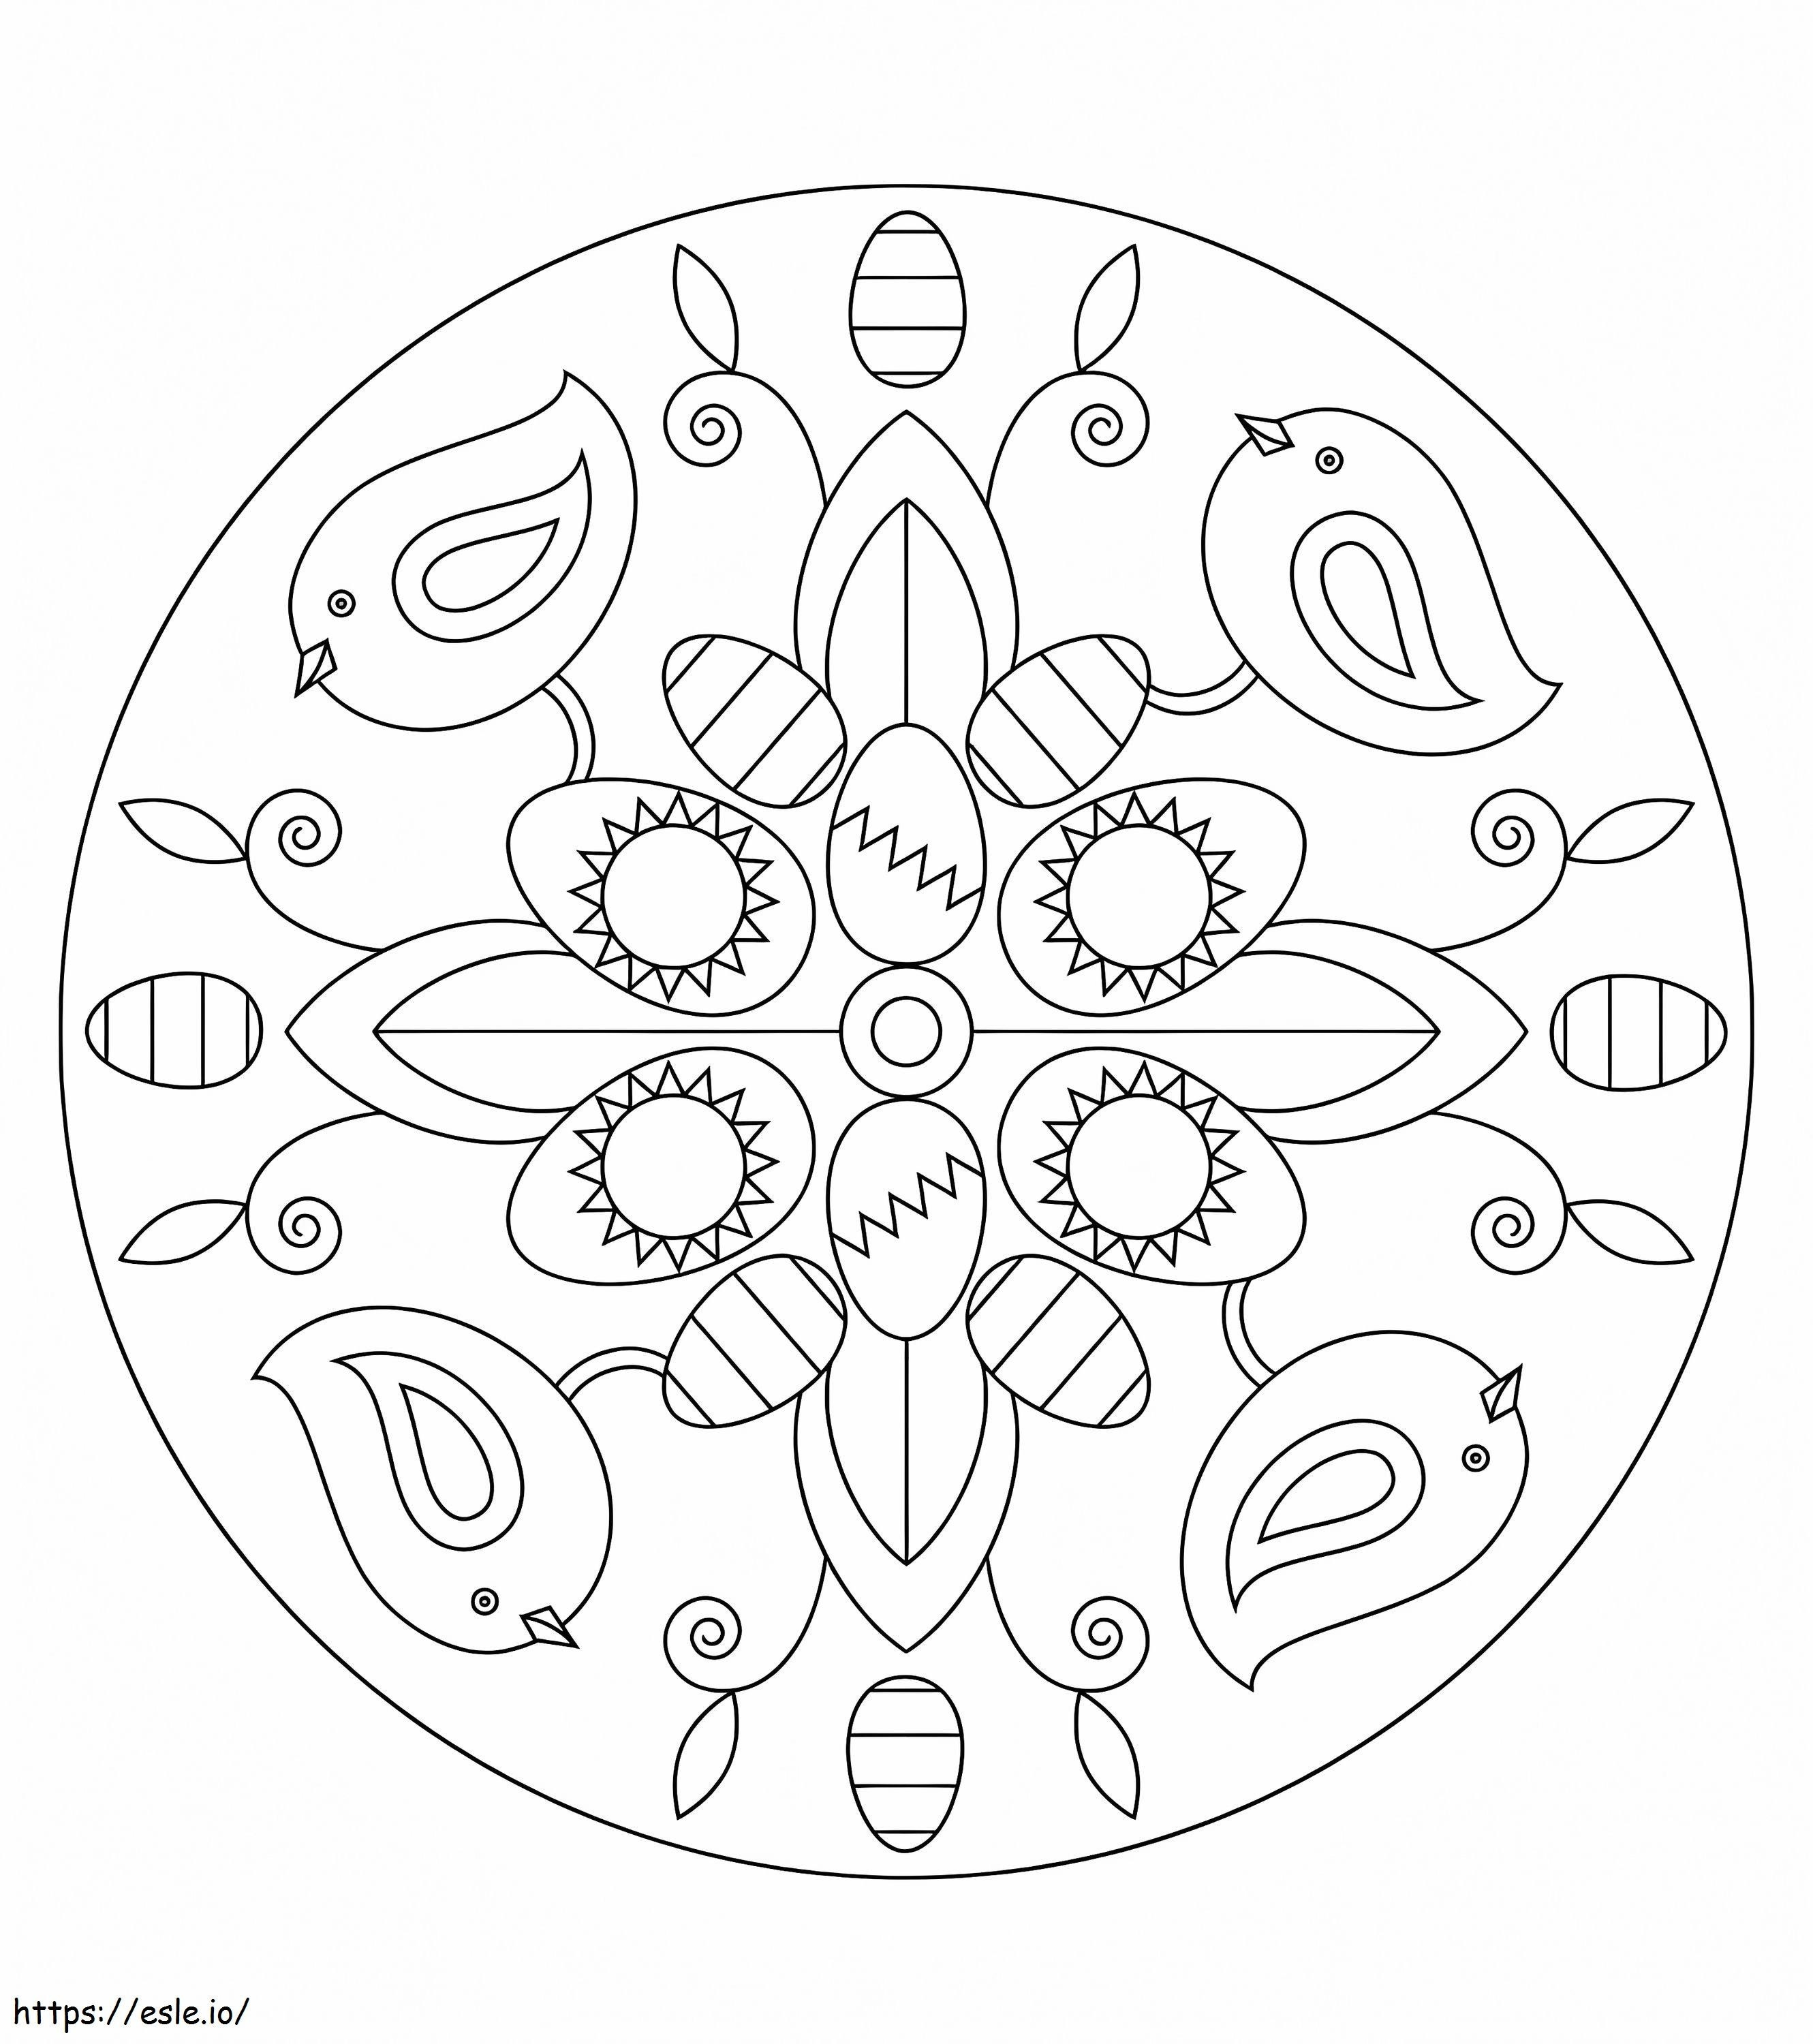 Mandala de Páscoa com pássaros para colorir